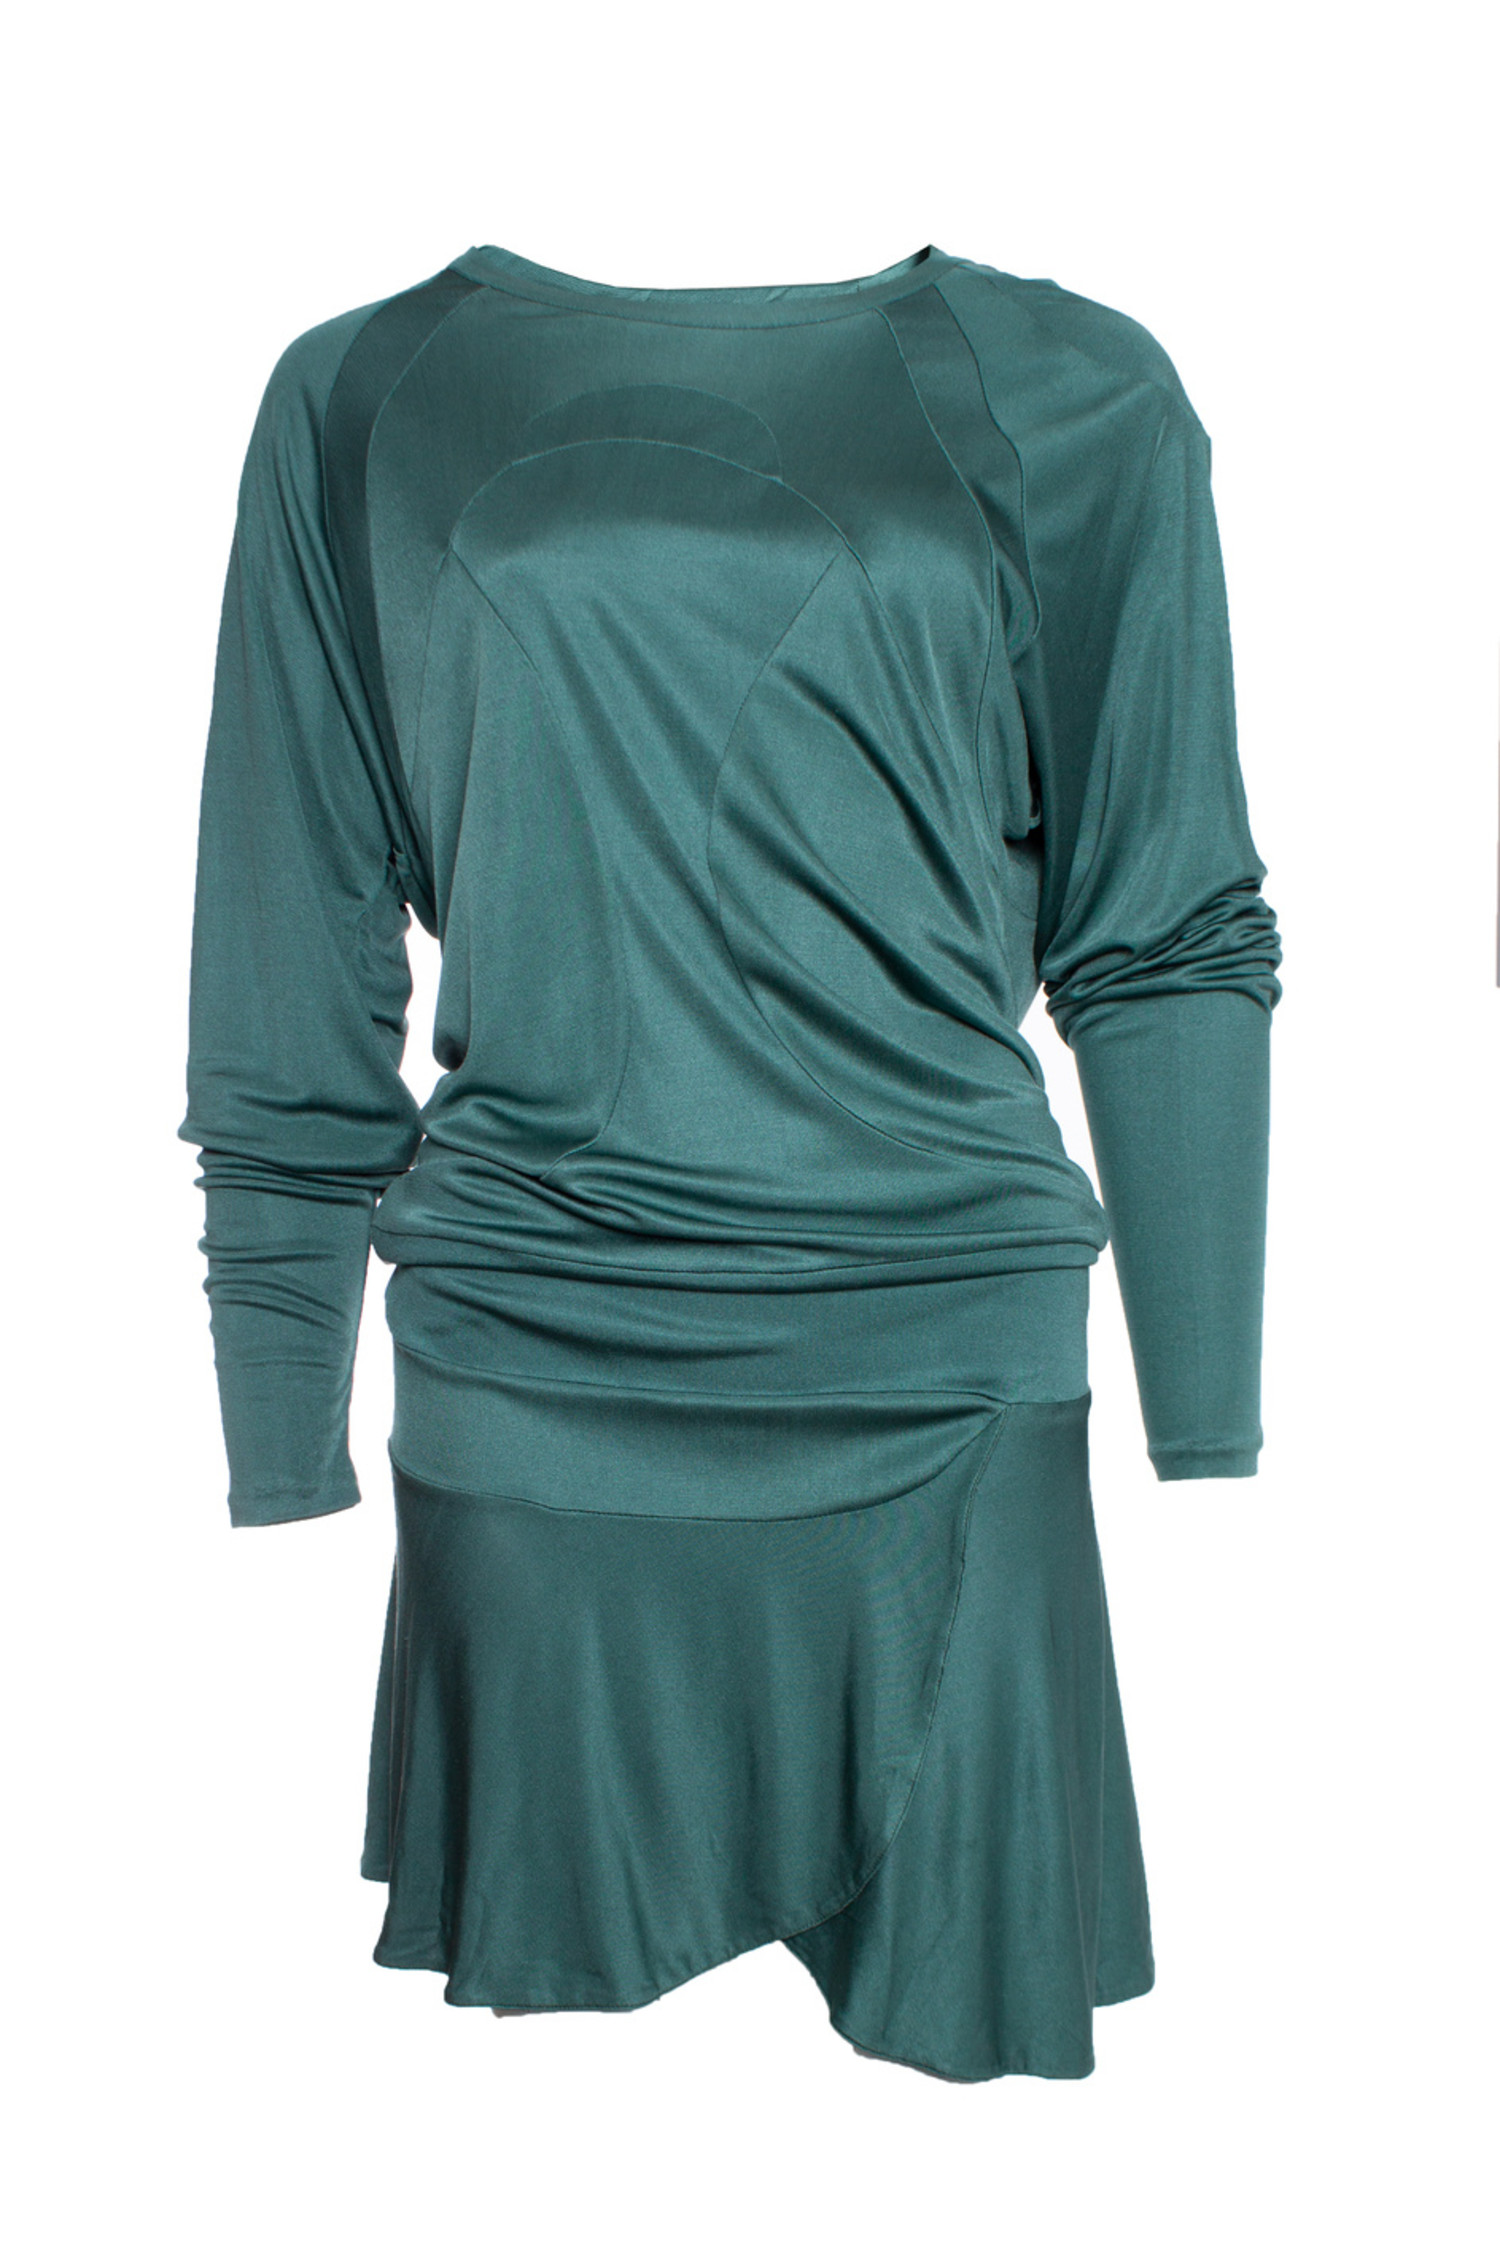 Gom Super goed Aanvrager Isabel Marant, Groen zijde jurk. - Unique Designer Pieces